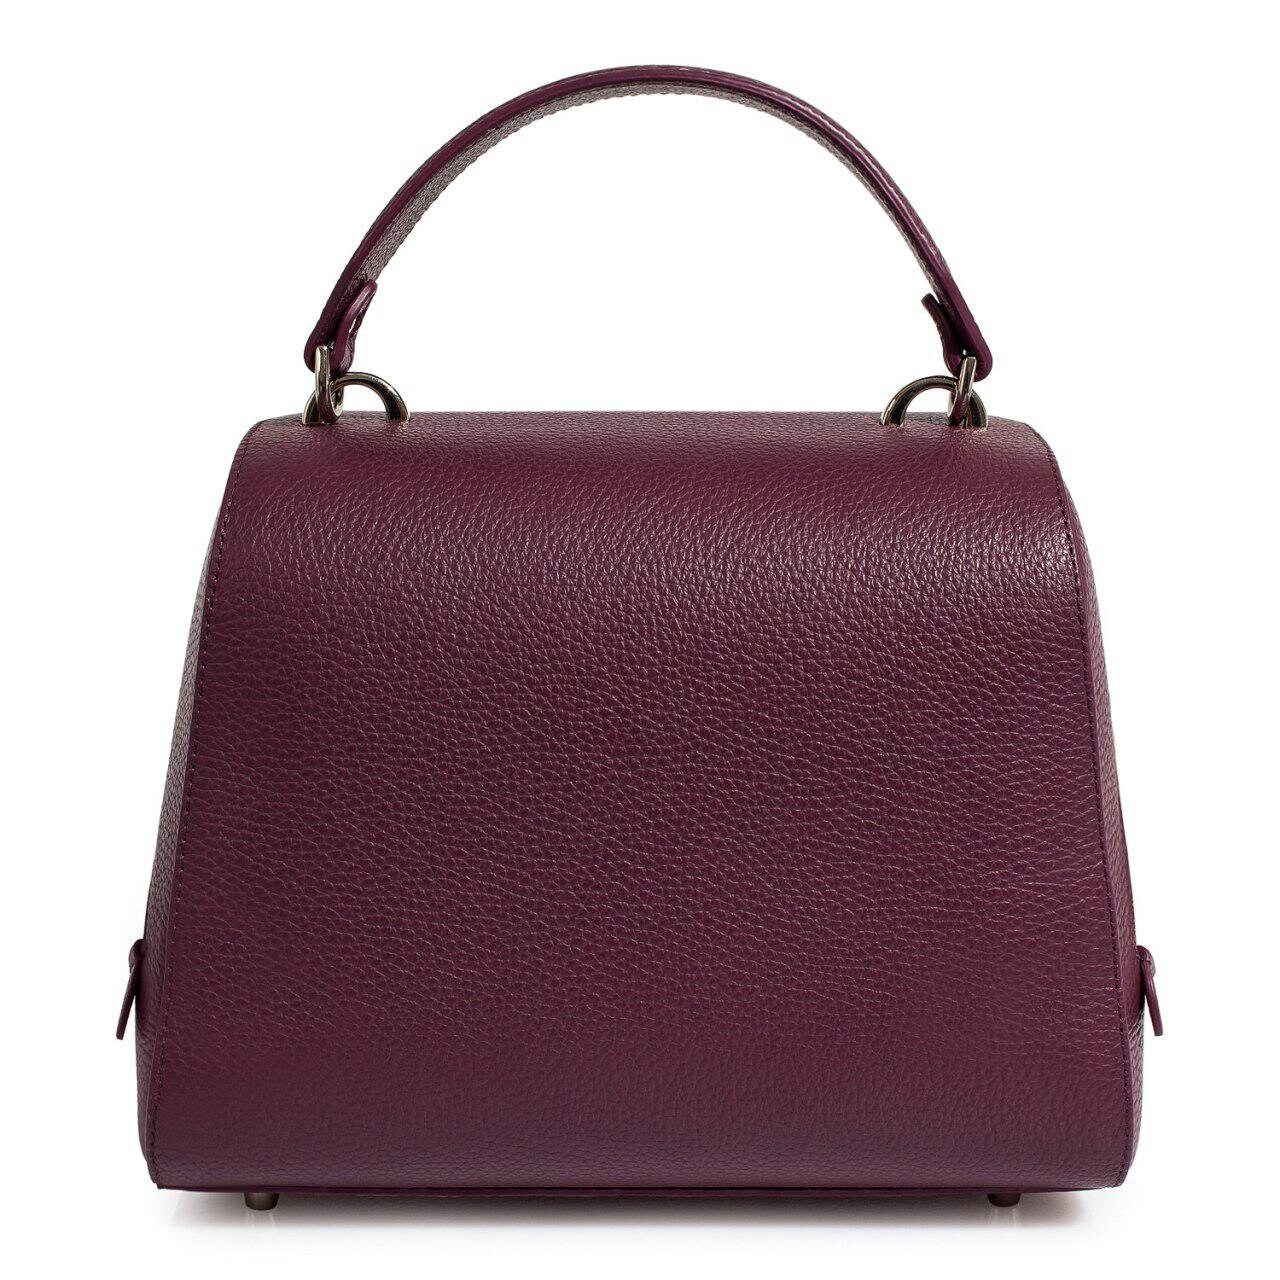 Leather Top Handle Bag Violet blackberry Leather Handbag | Etsy